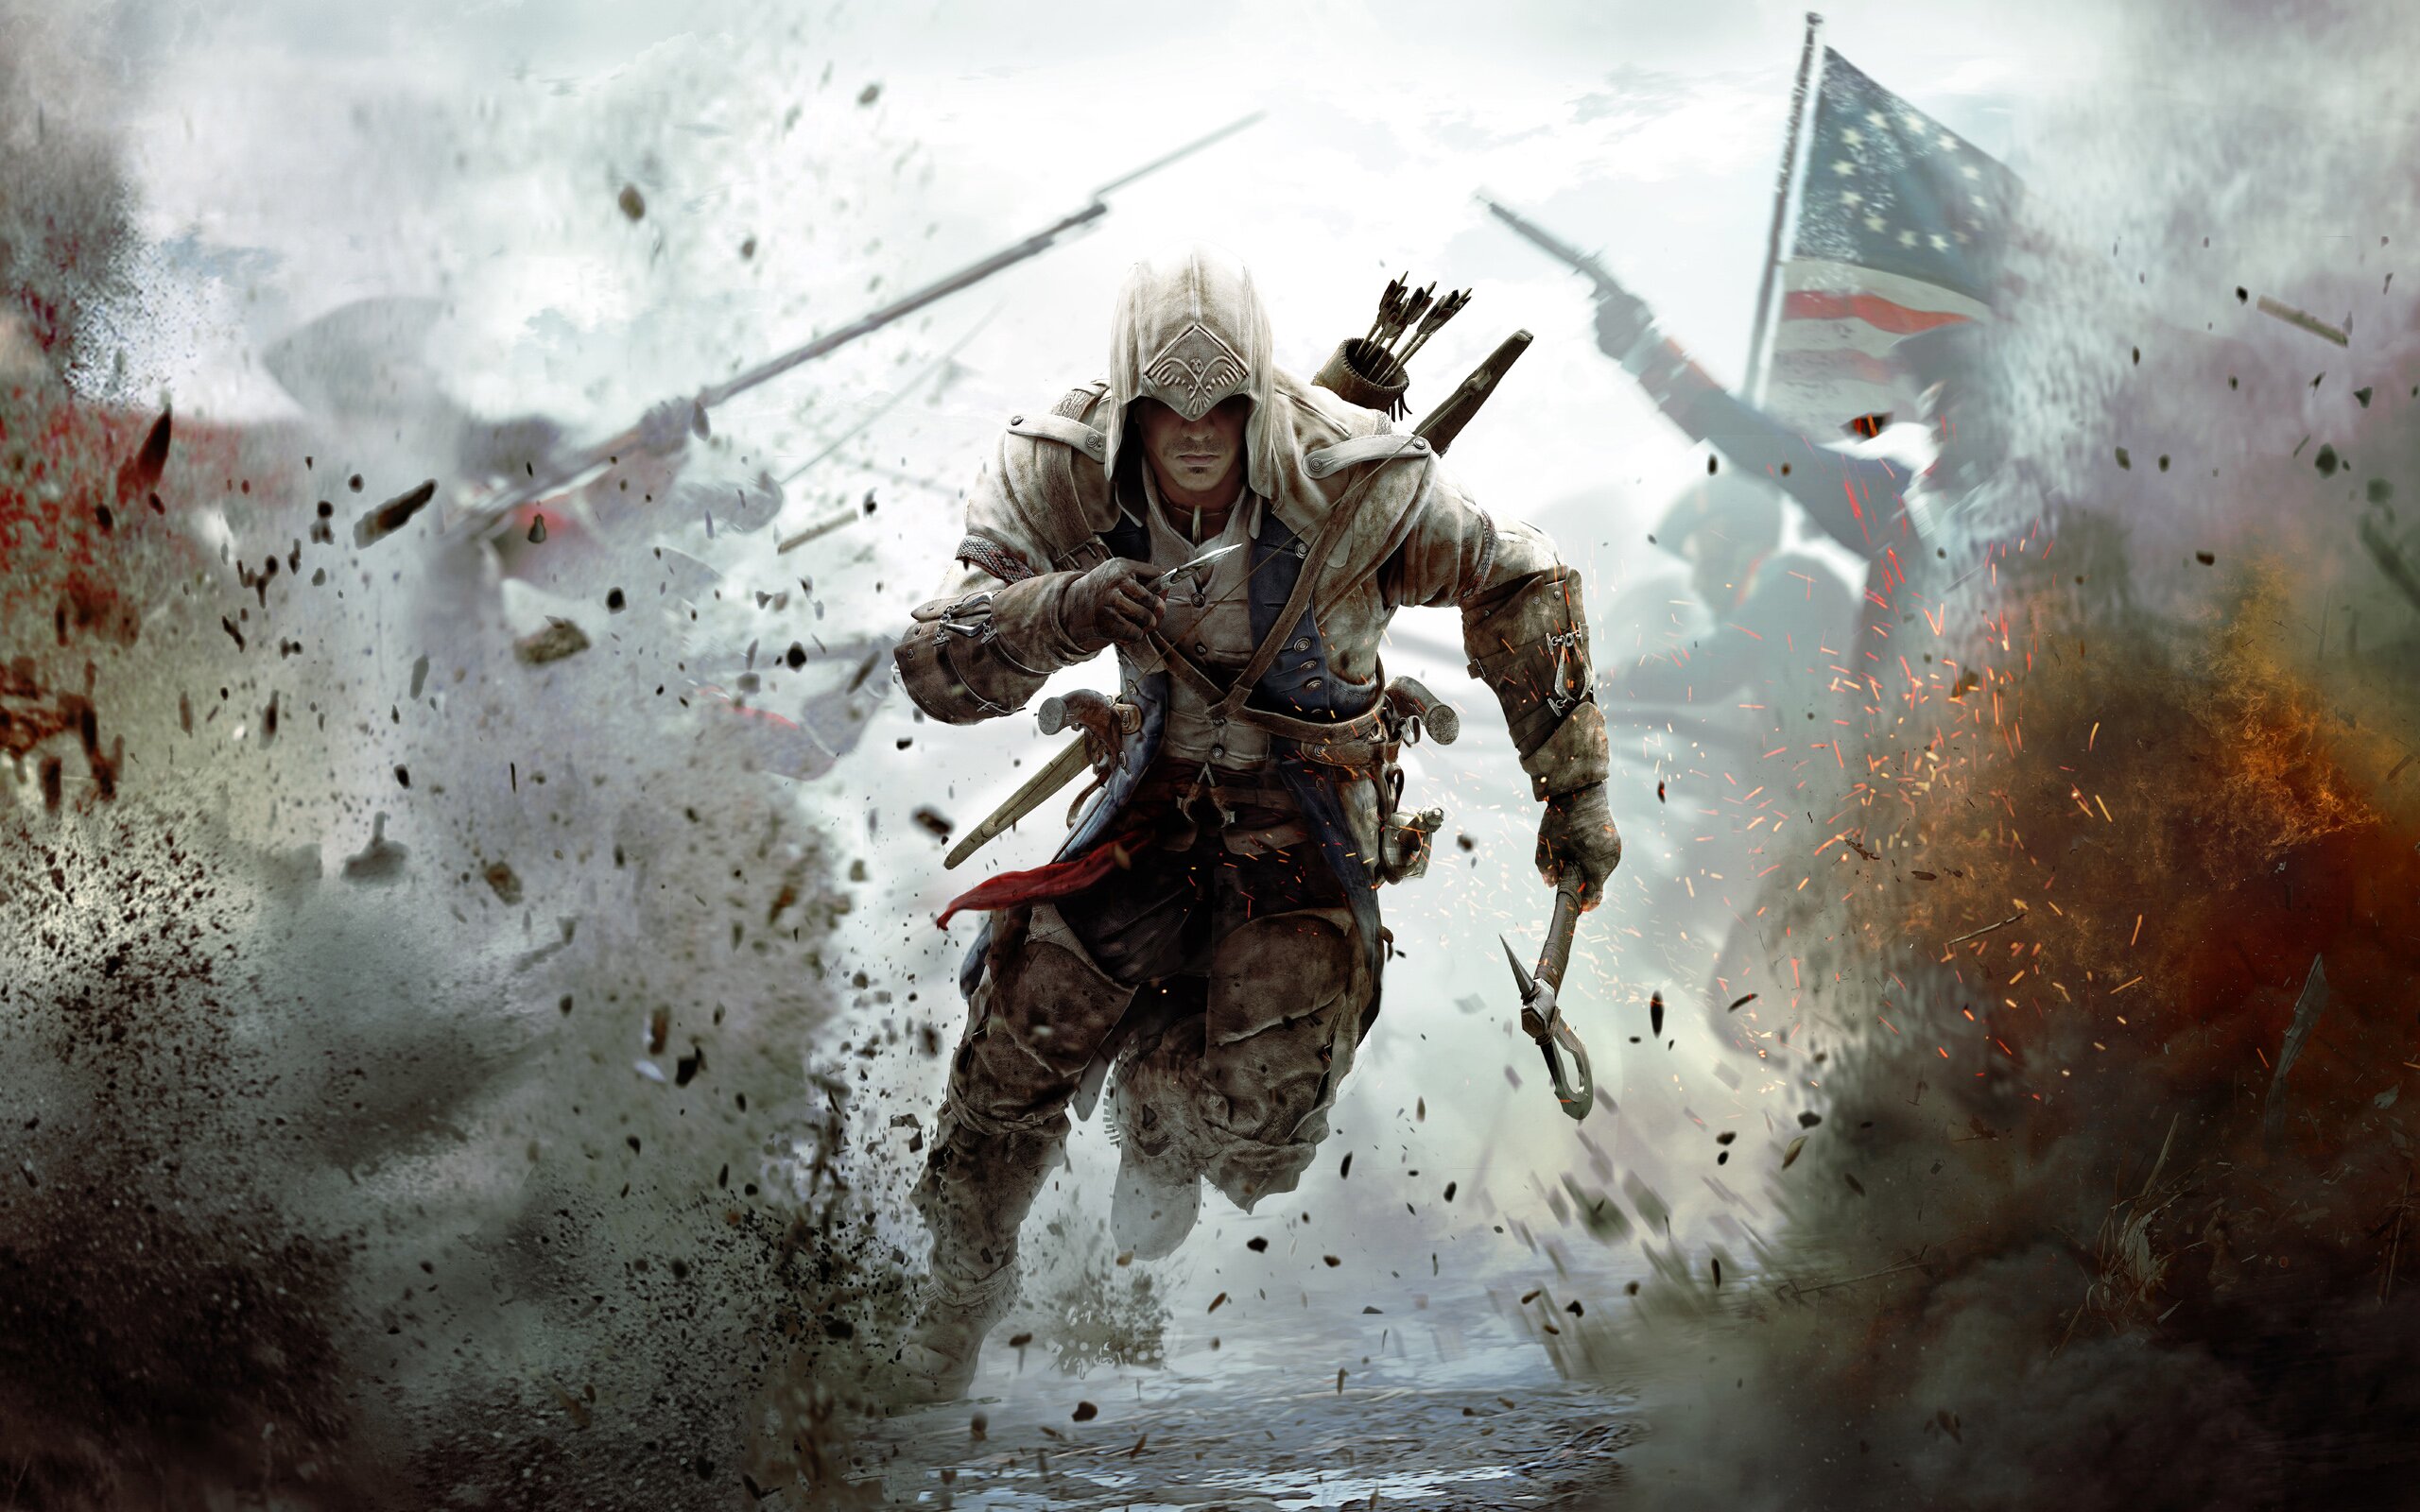 AssassinsCreedIII Assassins Creed recibe el premio a la mejor saga